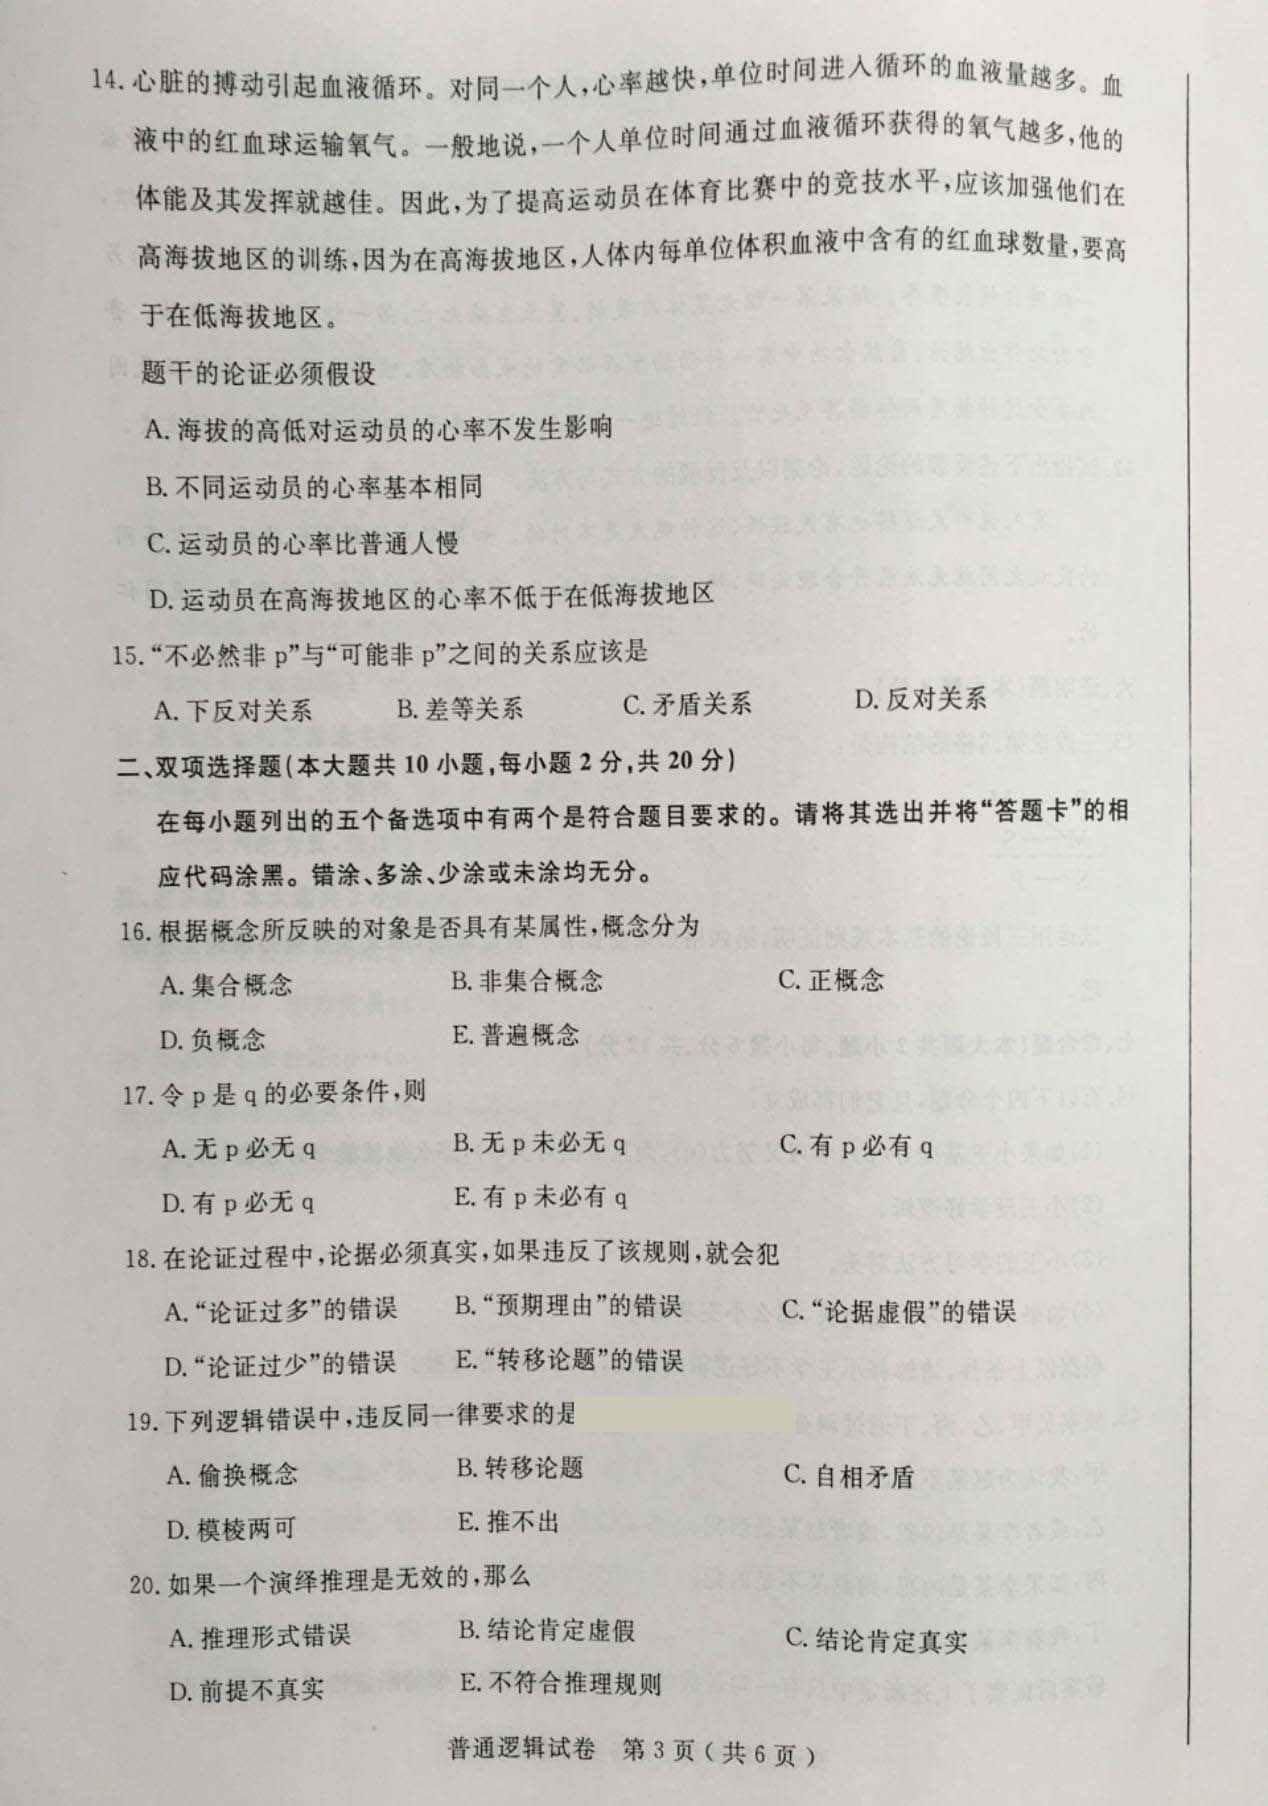 贵州省2016年04月自学考试00024普通逻辑